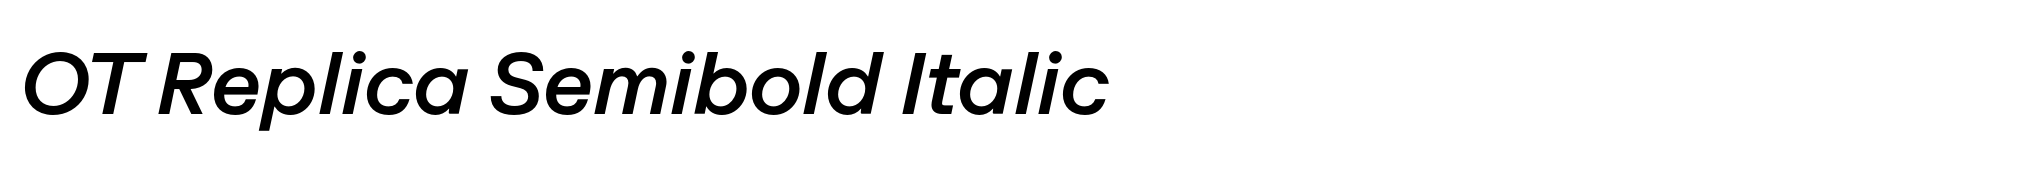 OT Replica Semibold Italic image